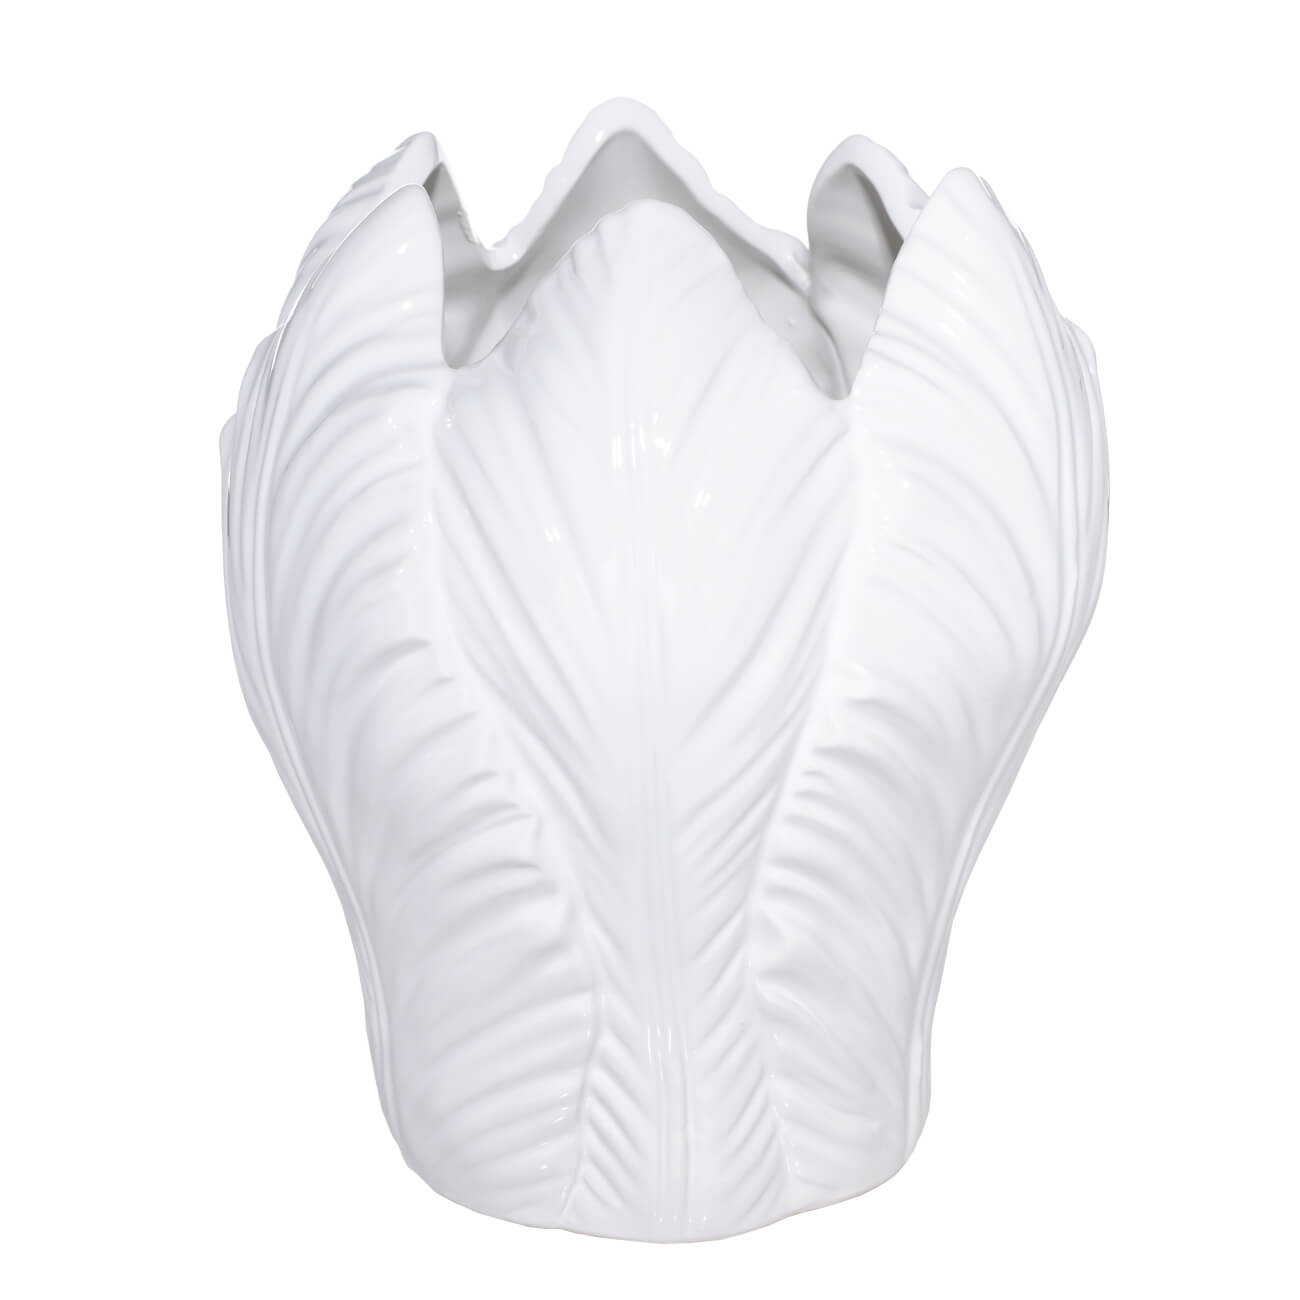 Ваза для цветов, 21 см, керамика, белая, Тюльпан, Tulip ваза для цветов 17 см декоративная керамика белая силуэт torso